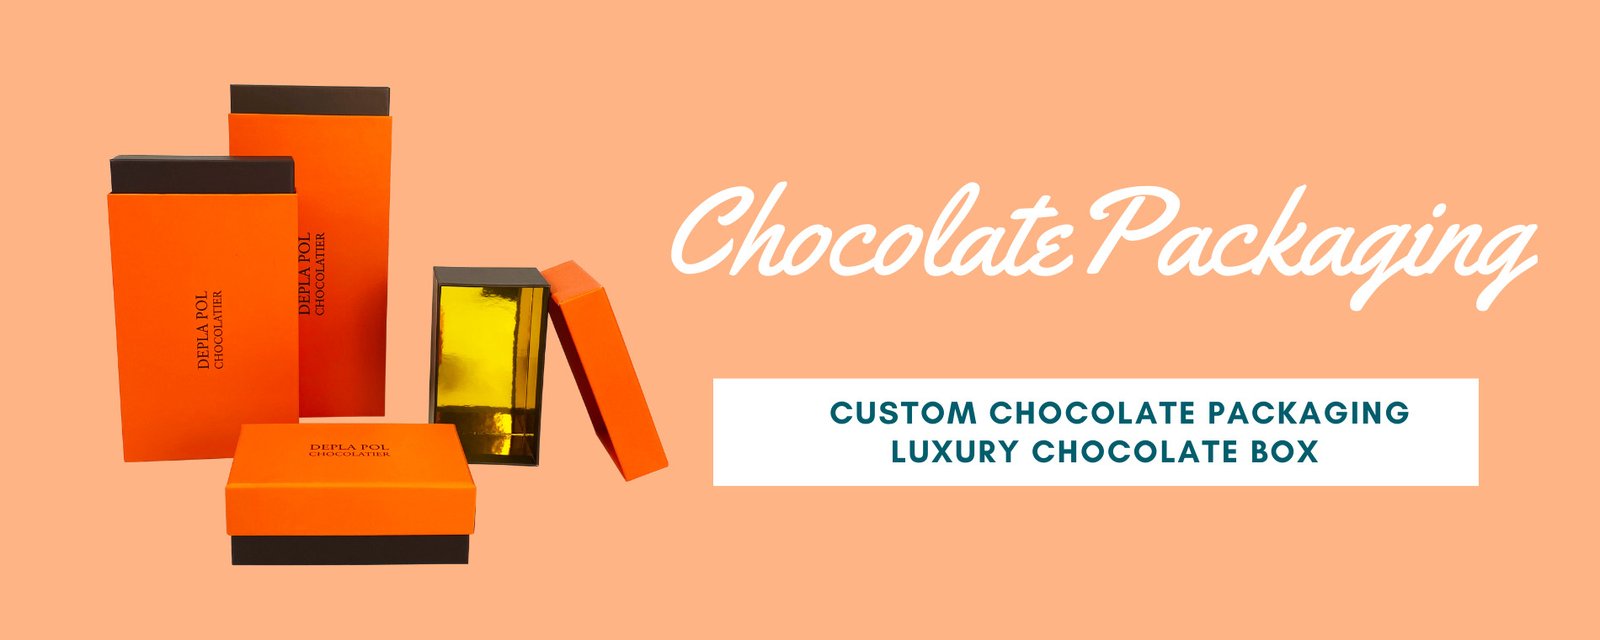 Custom Chocolate Packaging